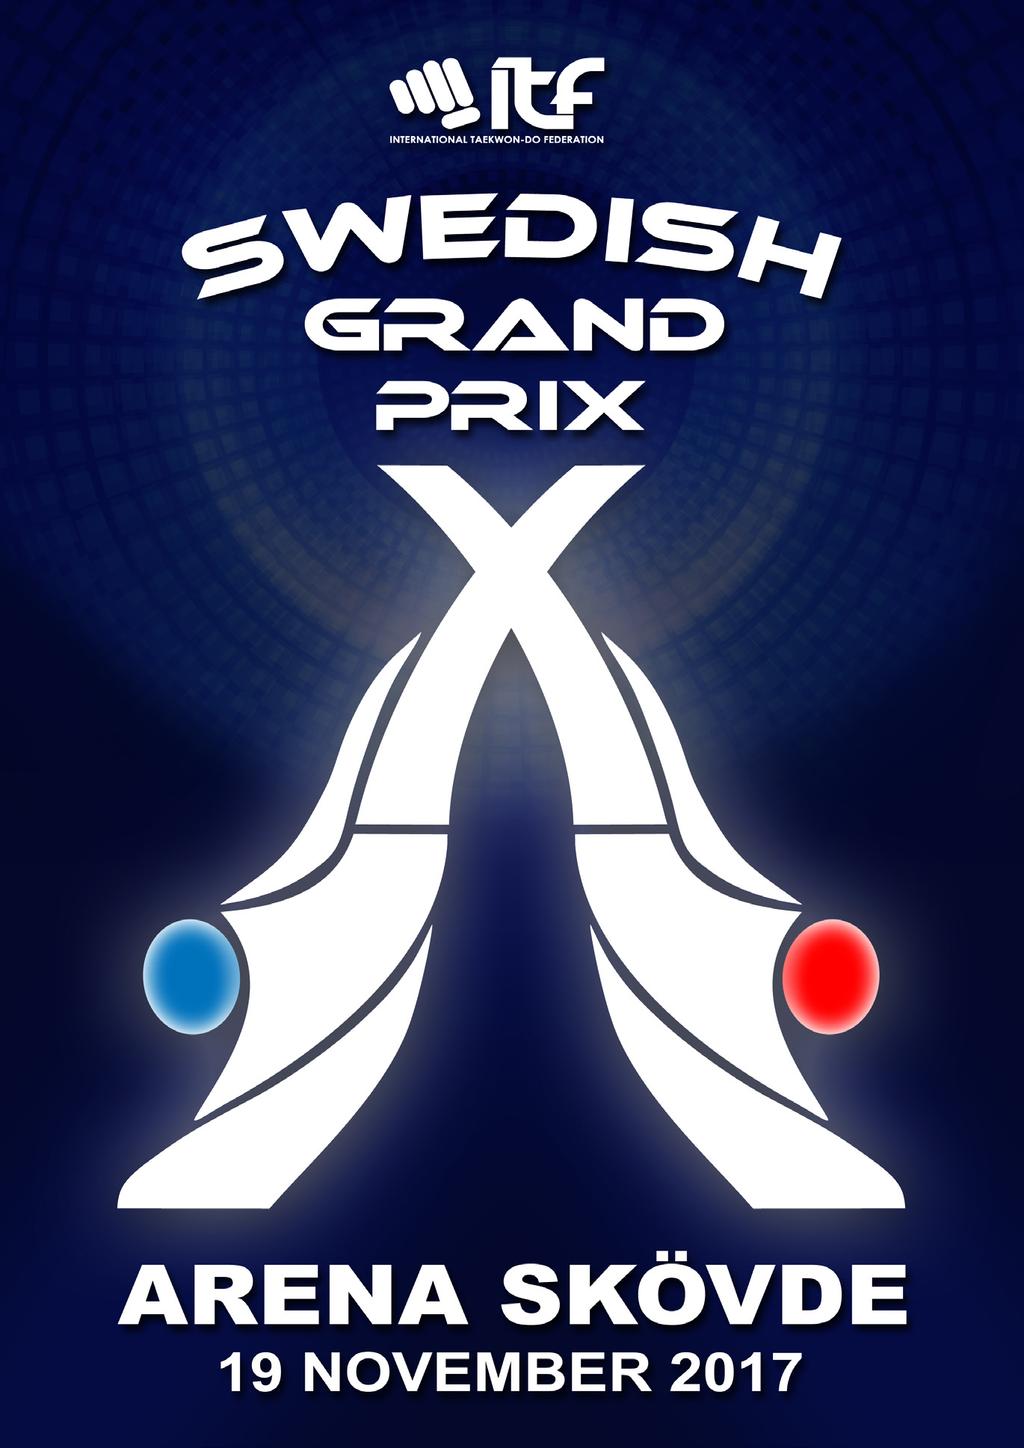 Skövde Taekwon-Do inbjuder härmed till SWEDISH GRAND PRIX En tävling för alla